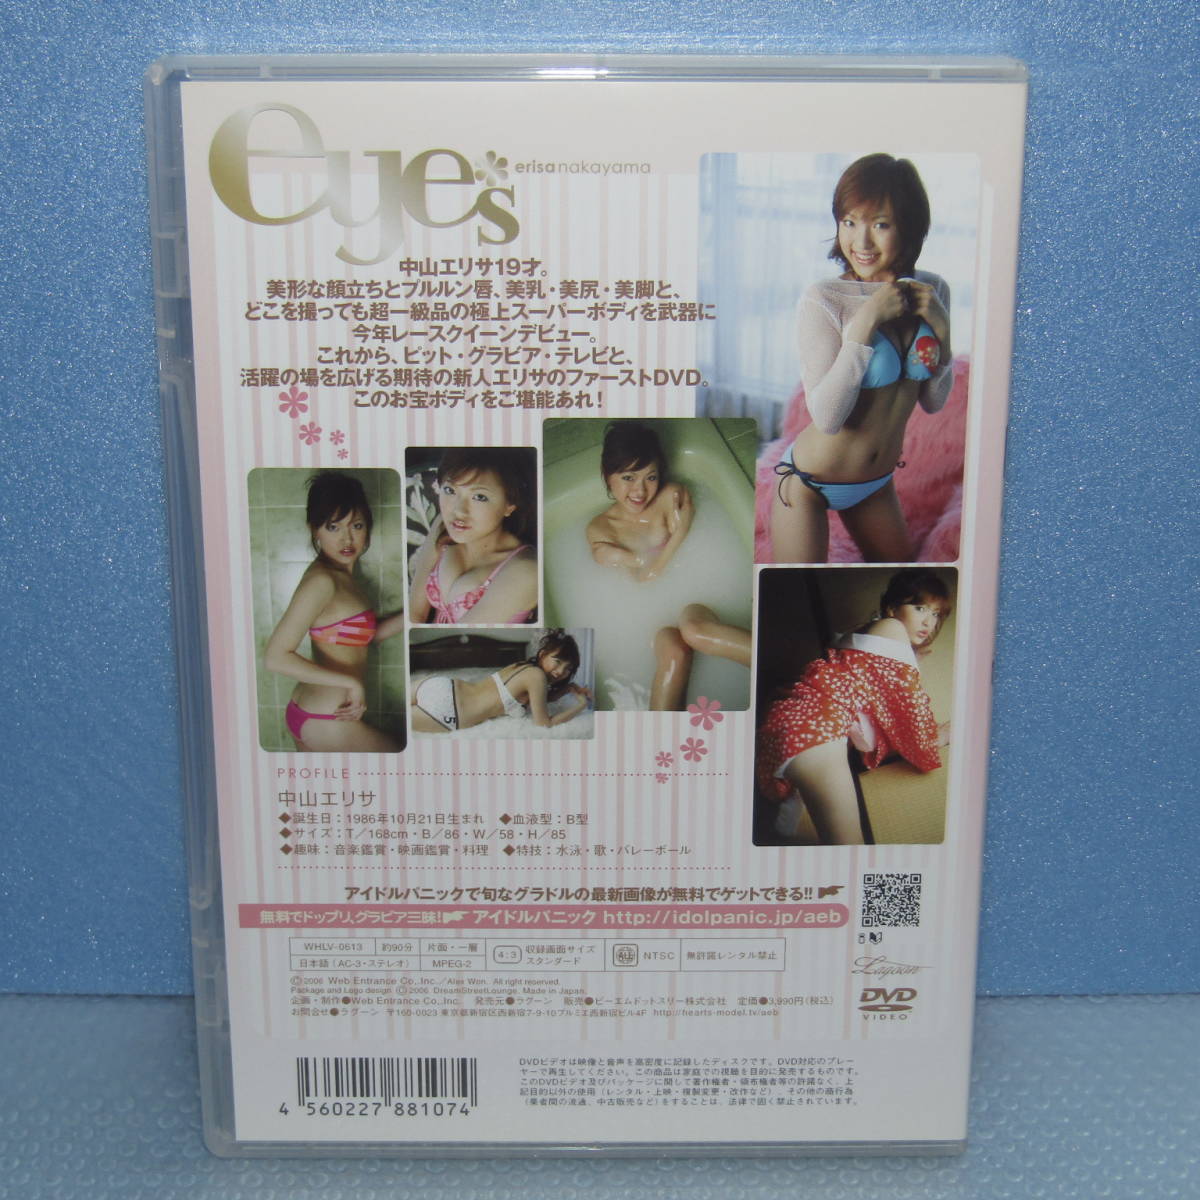 DVD「中山エリサ eyes トリンプイメージガール erisa nakayama SUPER GT RQ 廃盤」_画像3